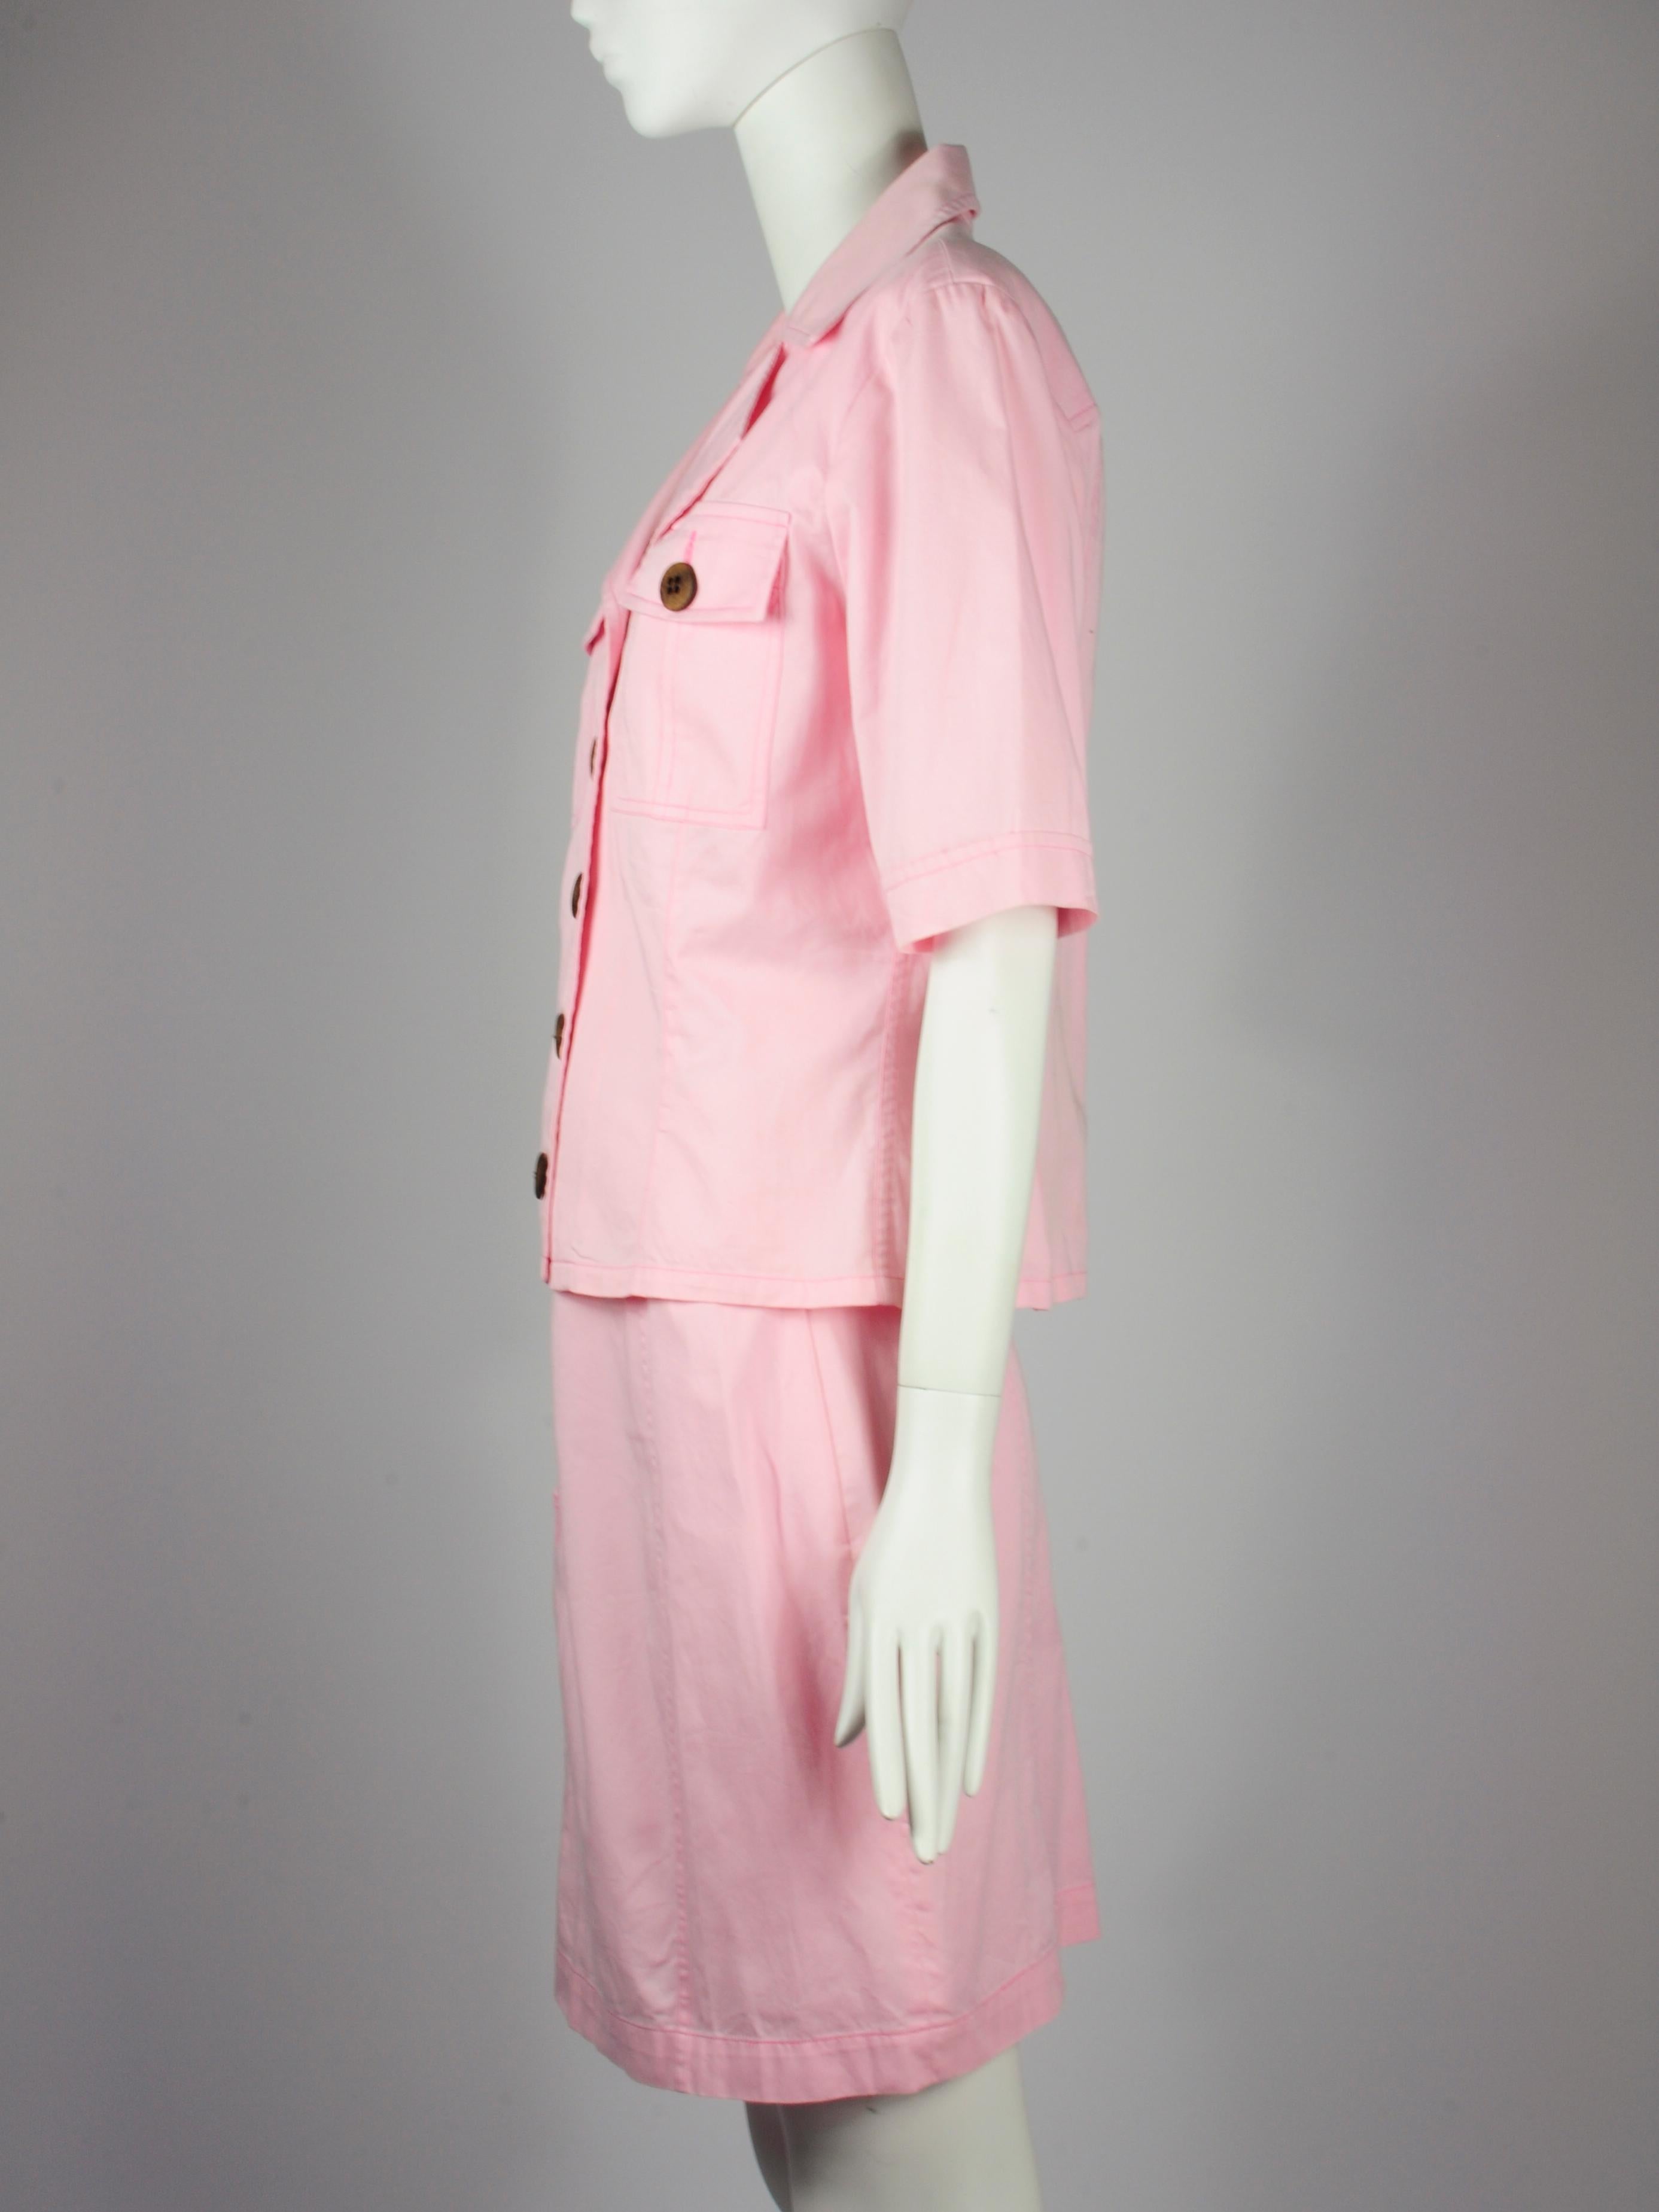 Yves Saint Laurent Saharienne Safari Two Piece Skirt Suit Set Pink Pockets 1990s For Sale 5